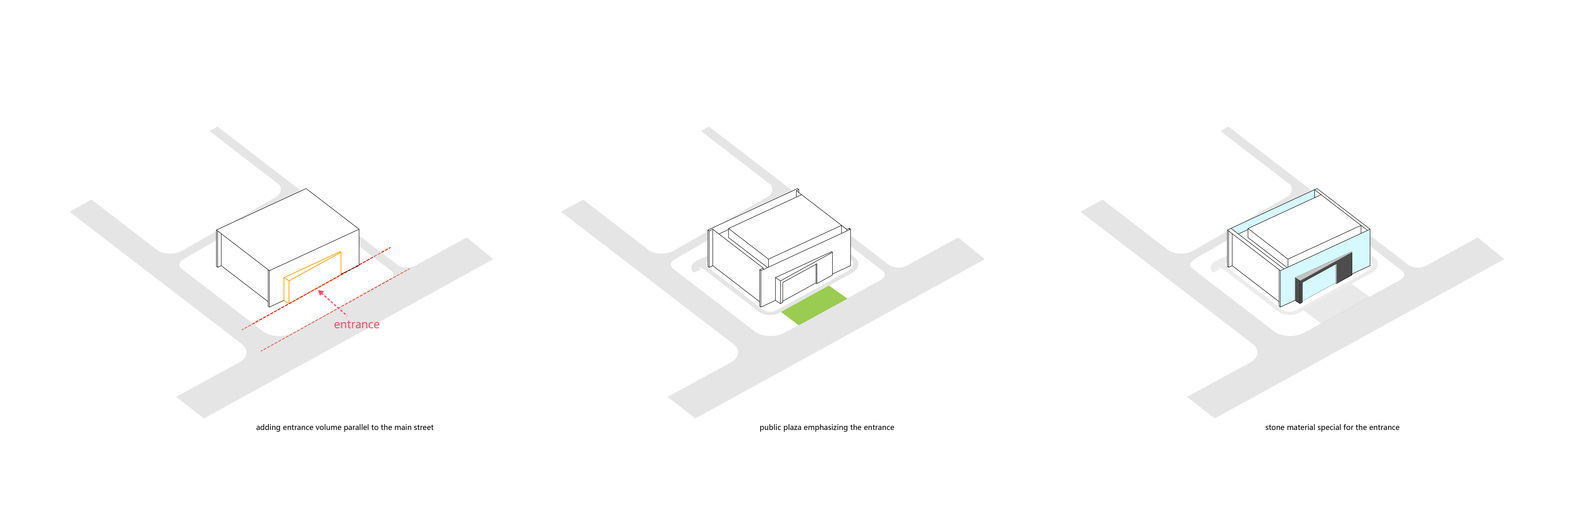 宁波鄞州市民中心建筑设计/筑弧建筑设计事务所